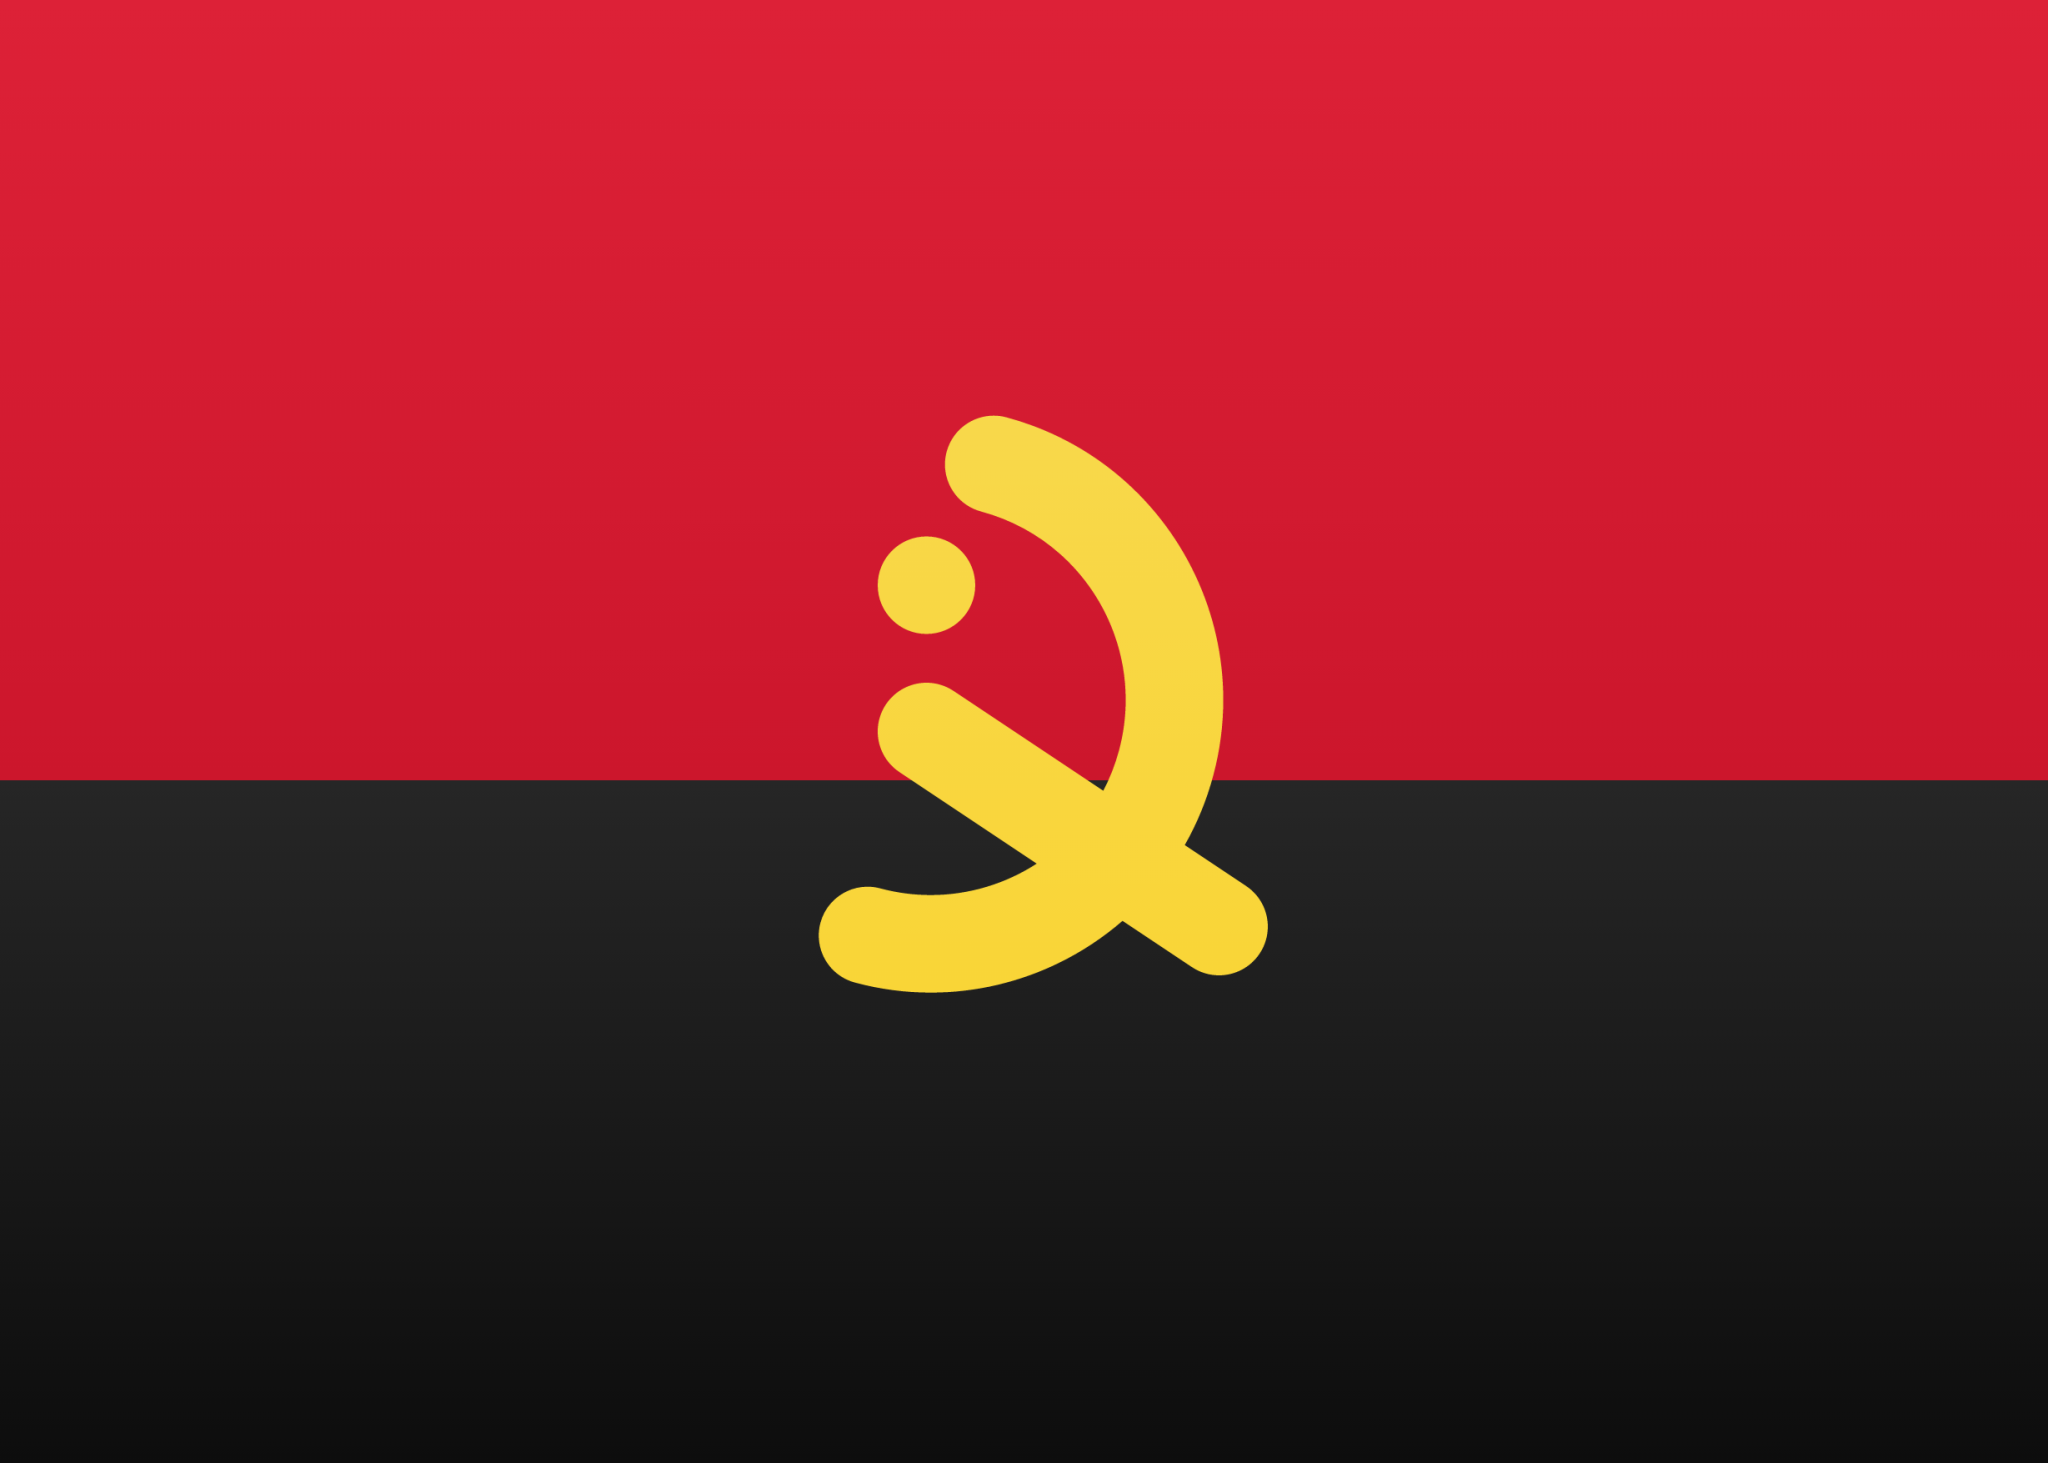 Angola icon